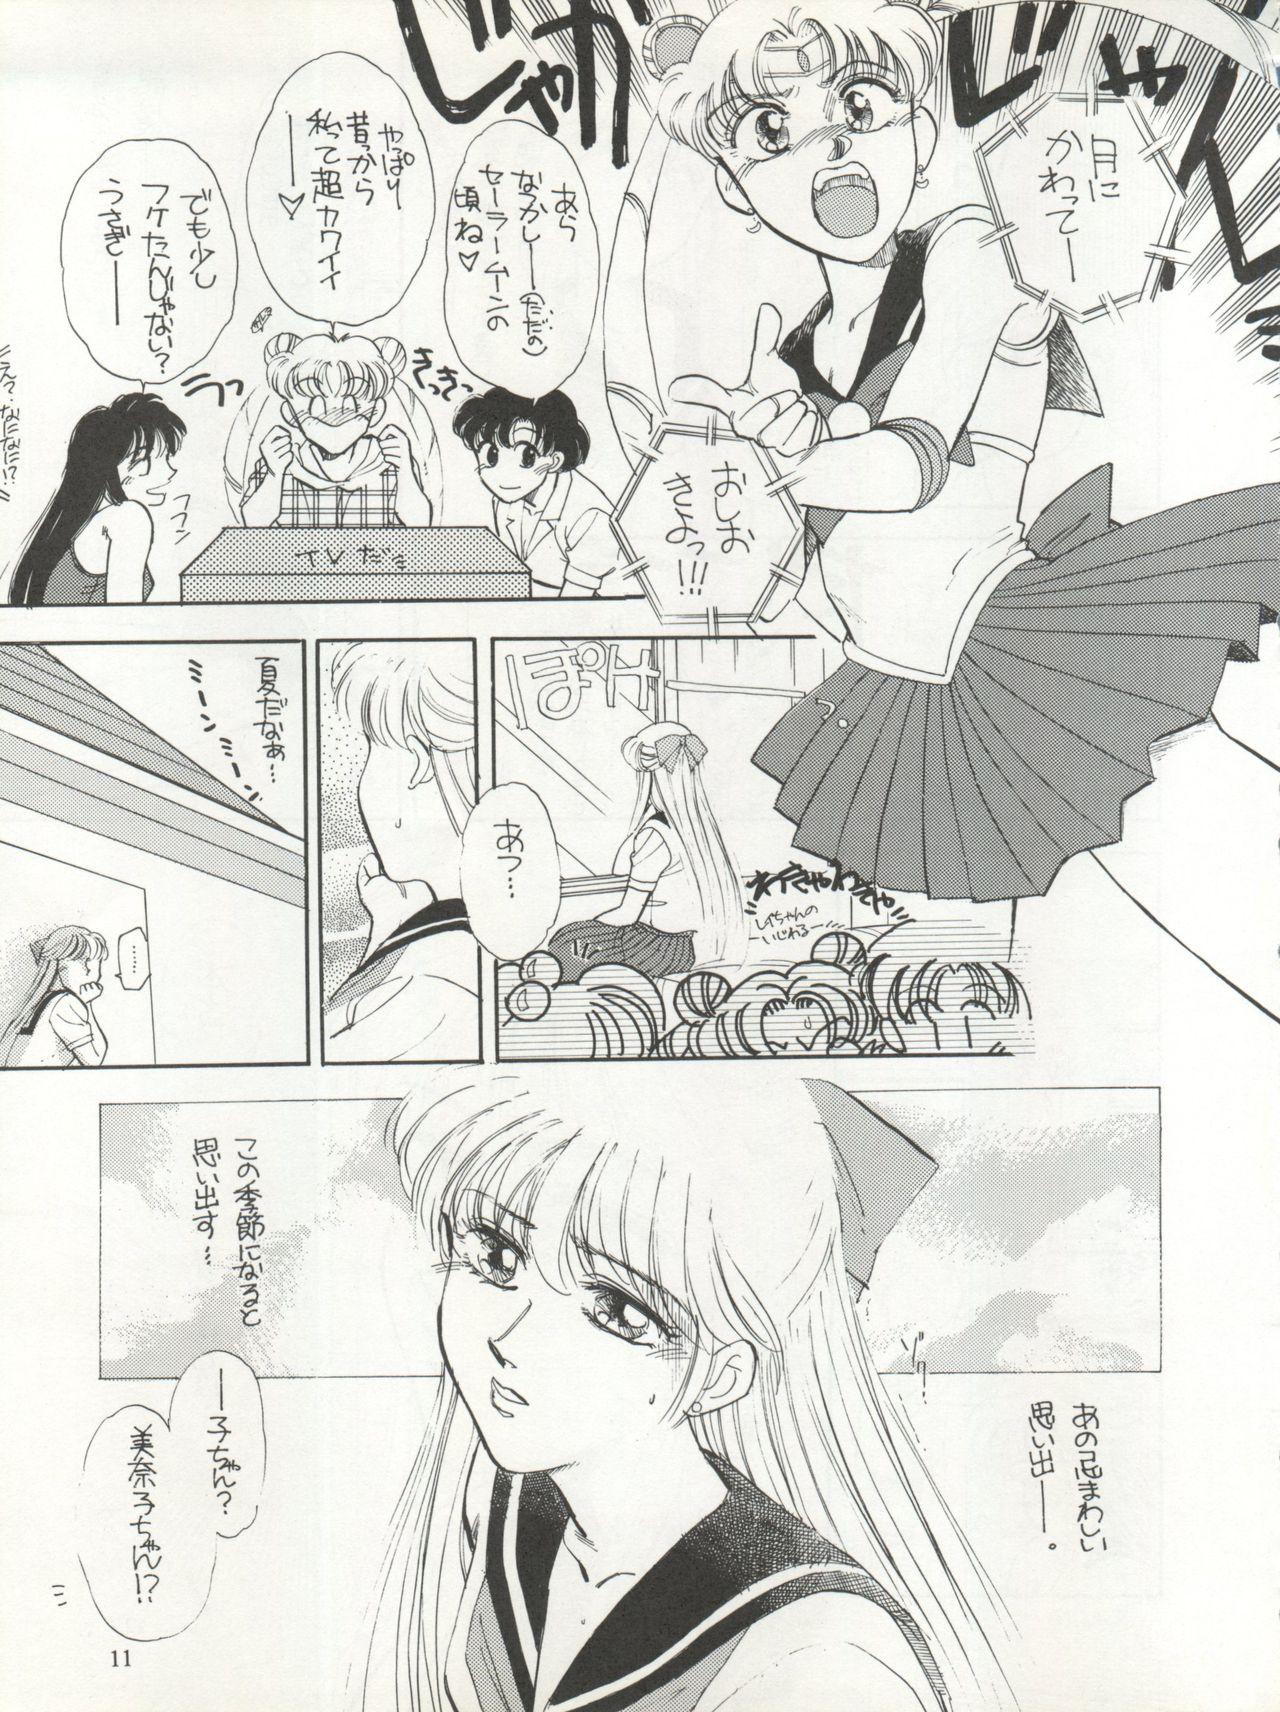 Busty Sekai Seifuku Sailor Fuku 5 - Sailor moon Amateur Sex - Page 9